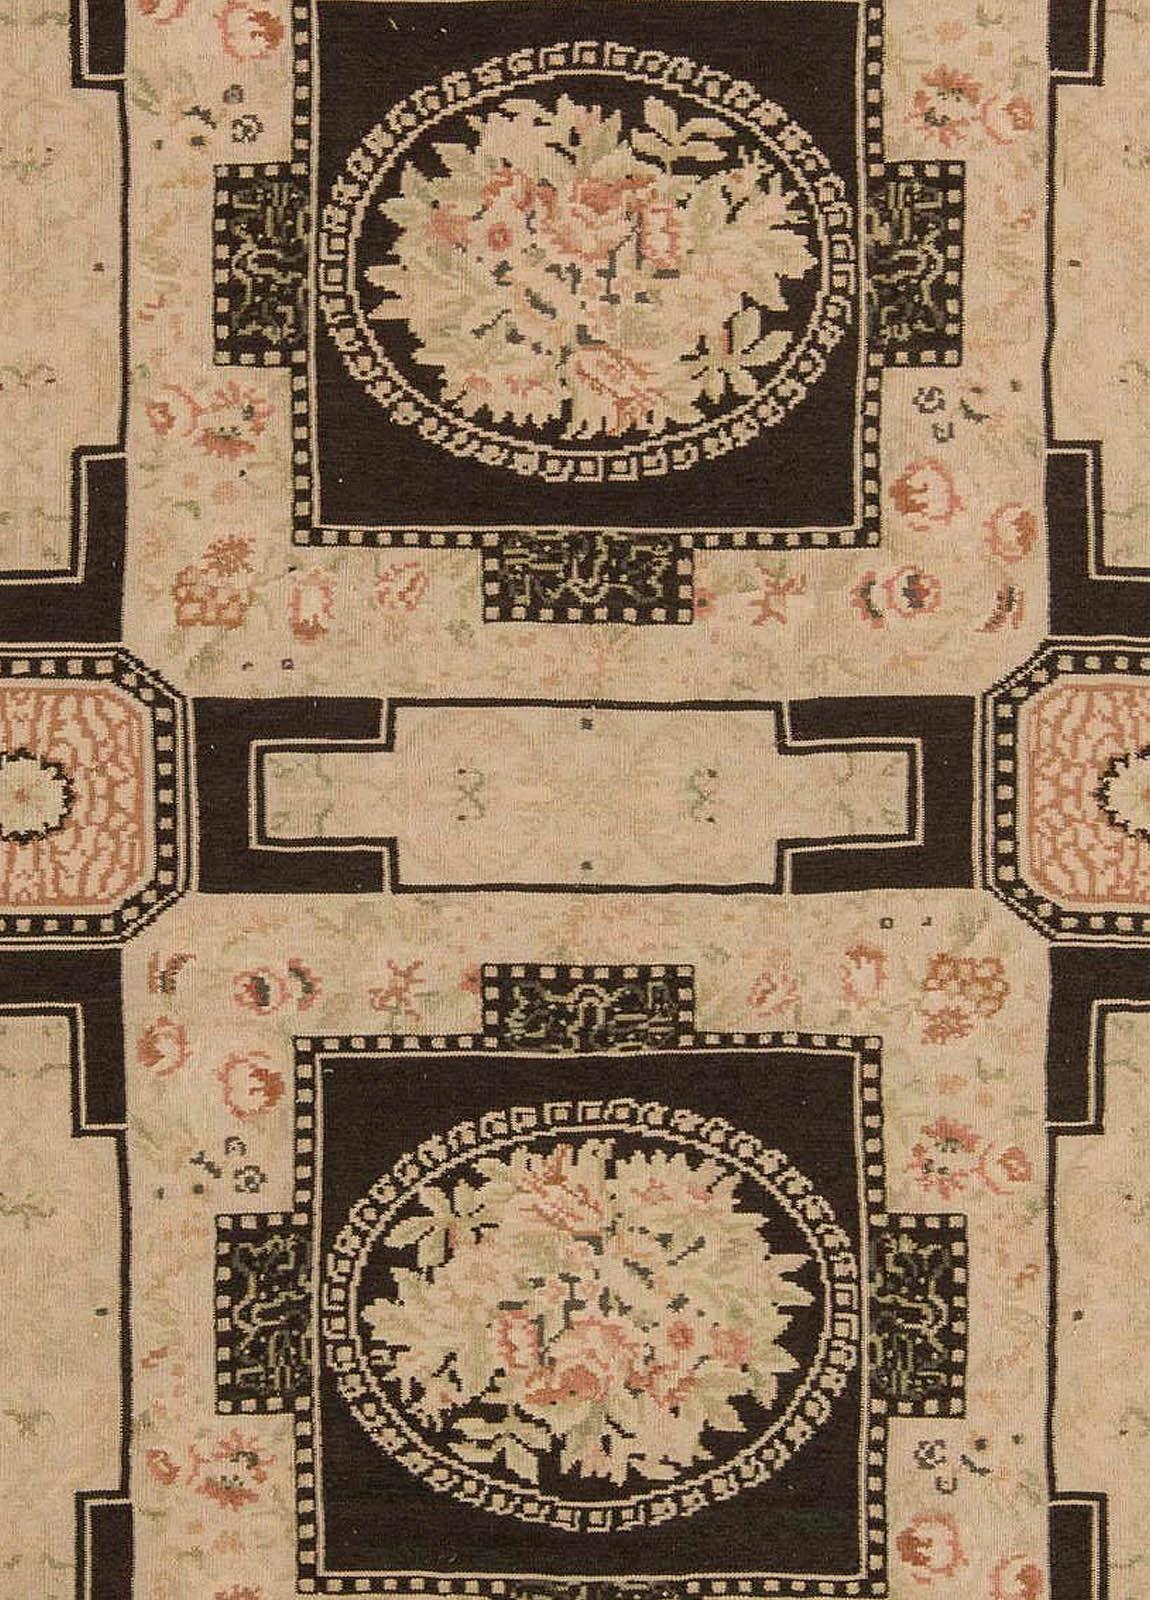 Zeitgenössischer, traditioneller, europäisch inspirierter Teppich aus Bessarabien von Doris Leslie Blau.
Größe: 10'0